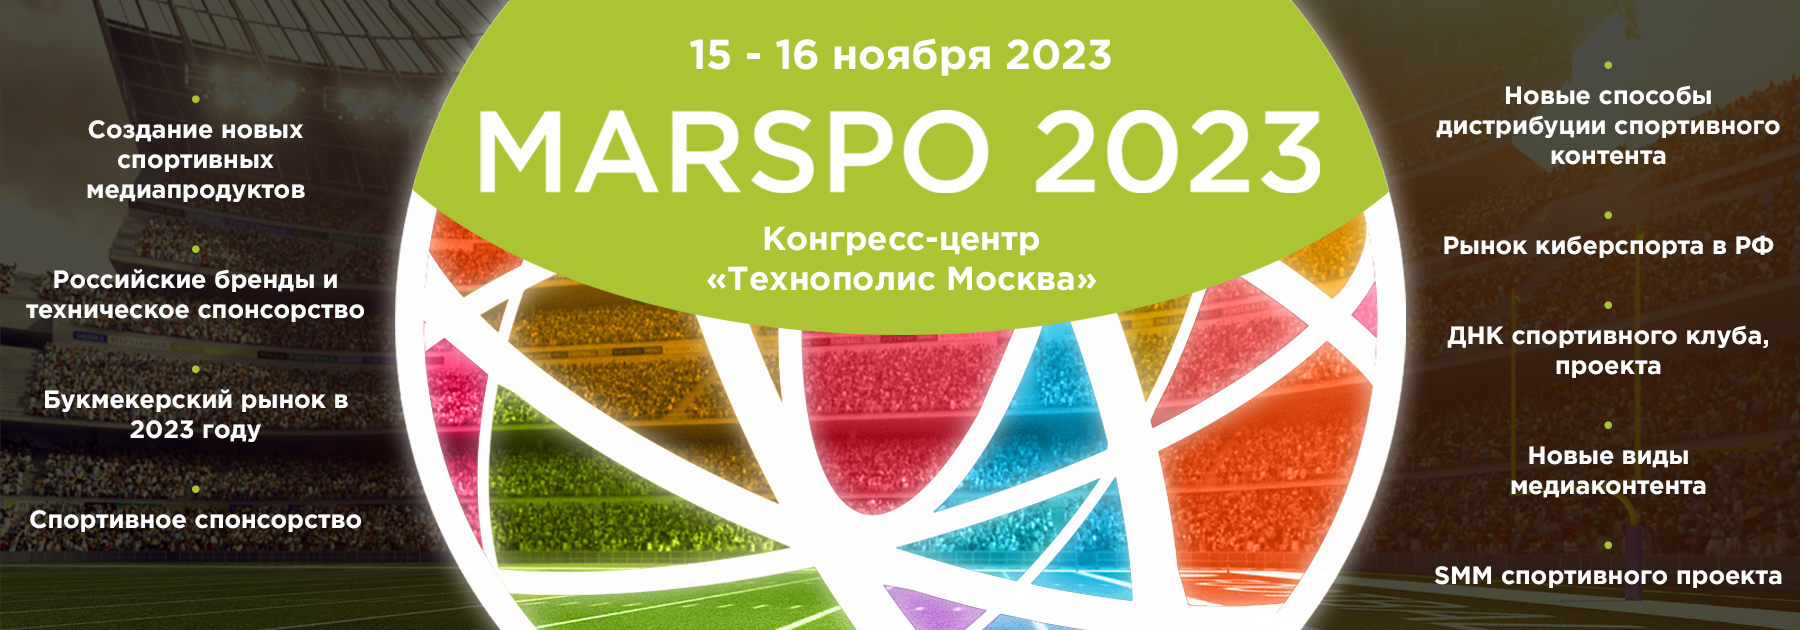 В Москве открылась VI Международная конференция по спортивному маркетингу MARSPO